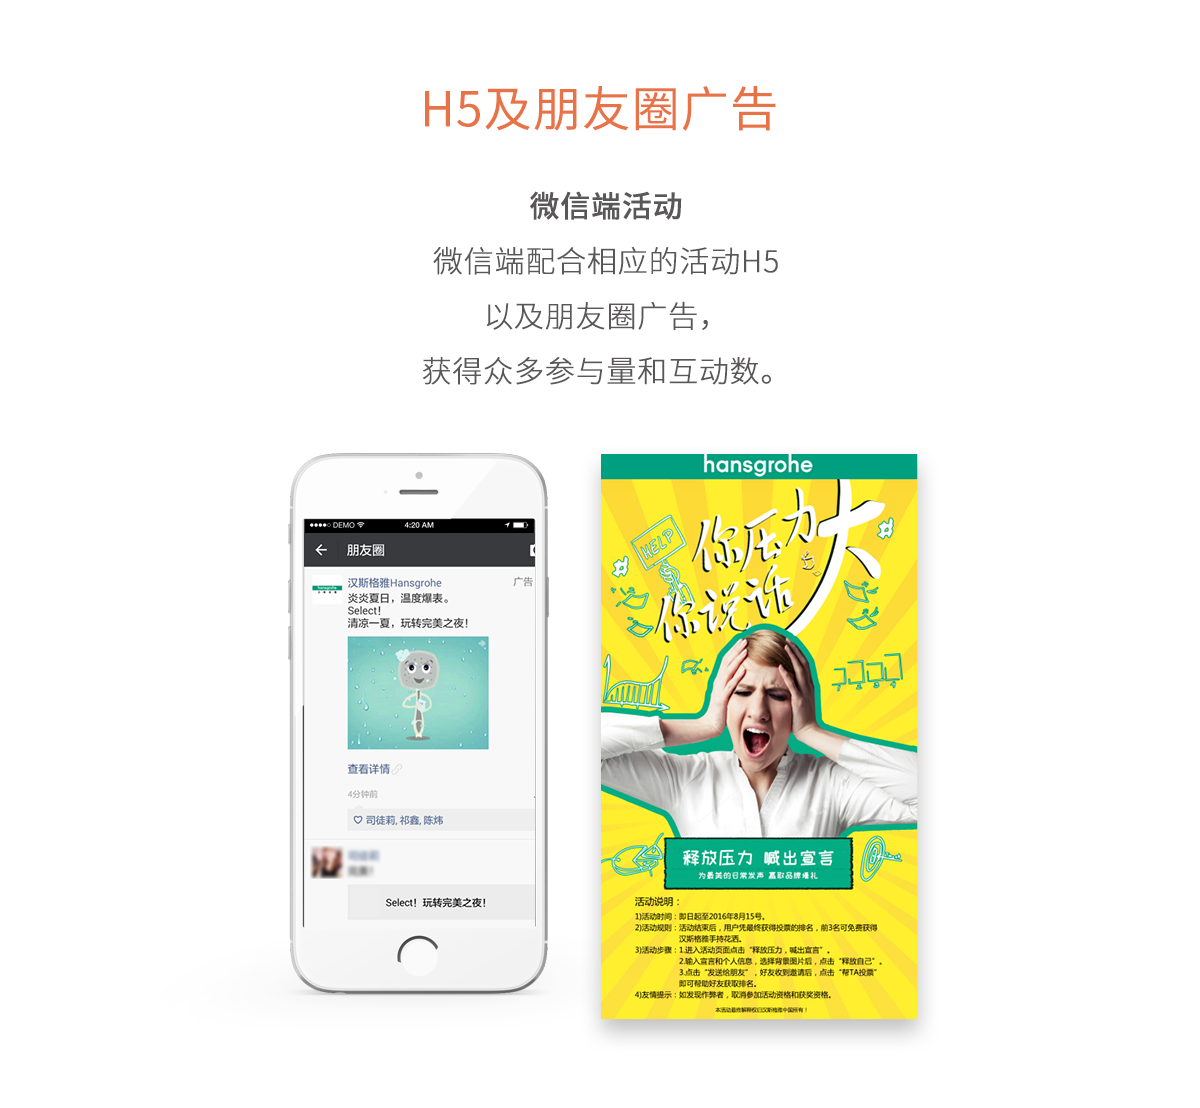 汉斯格雅-H5及朋友圈广告-新媒体营销,新媒体广告公司,上海网络营销,微信代运营,高端网站建设,网站建设公司